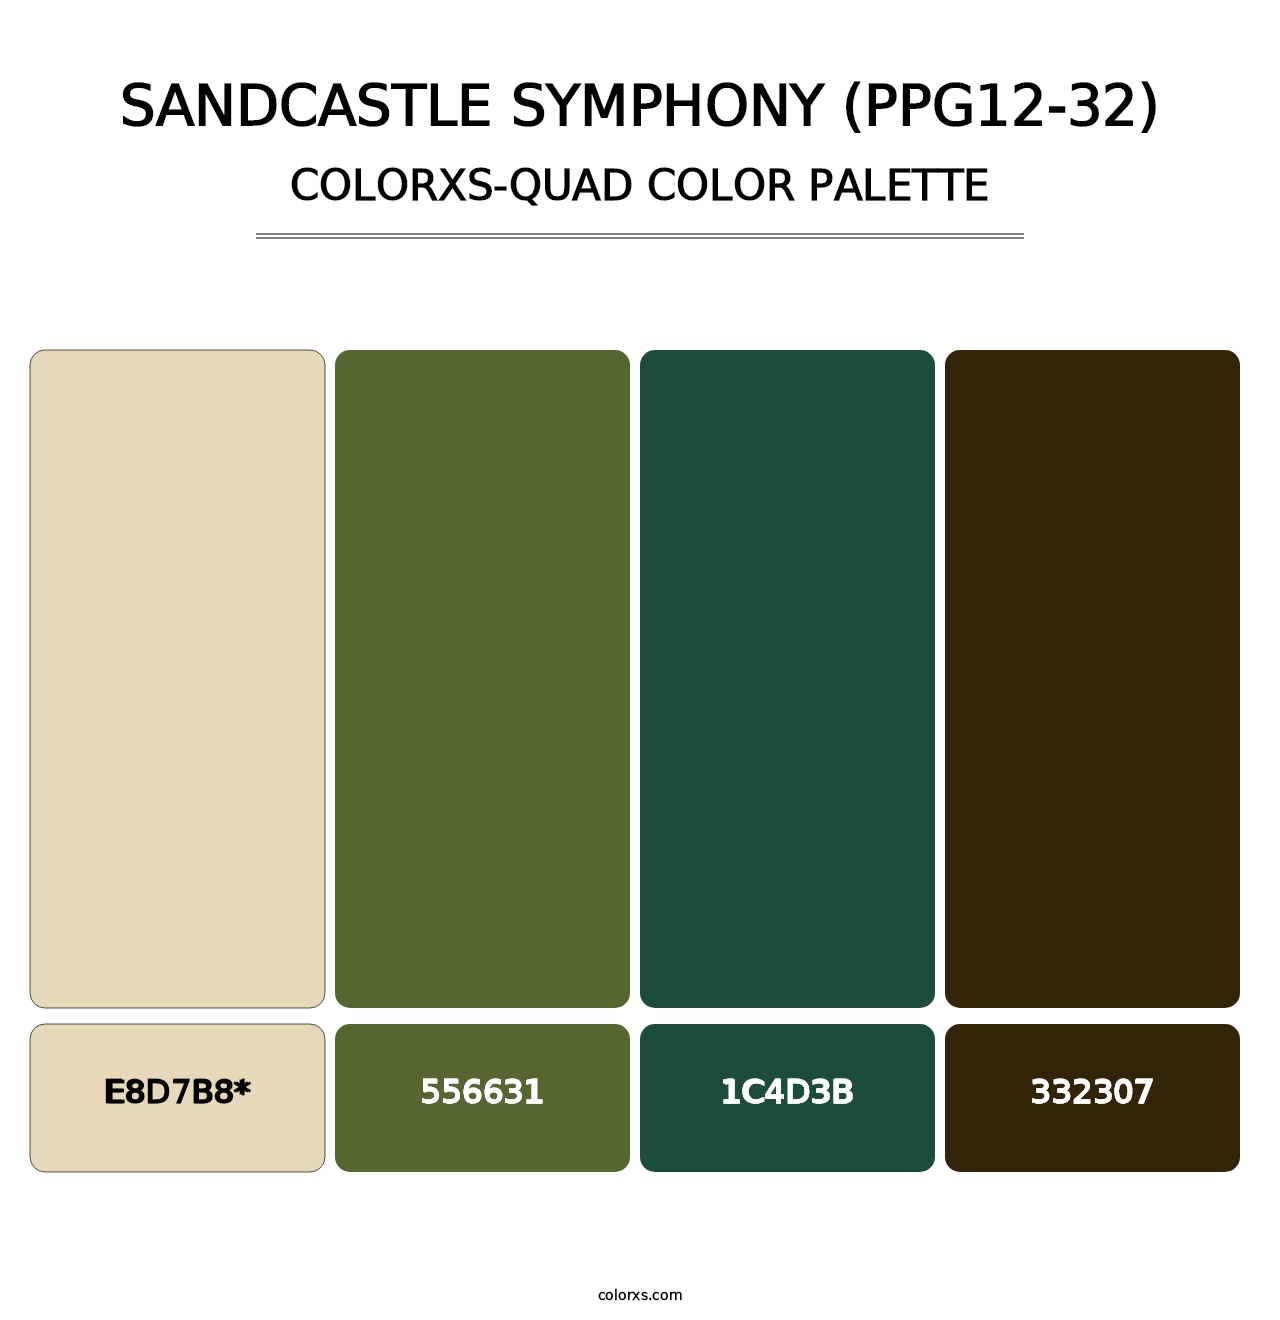 Sandcastle Symphony (PPG12-32) - Colorxs Quad Palette